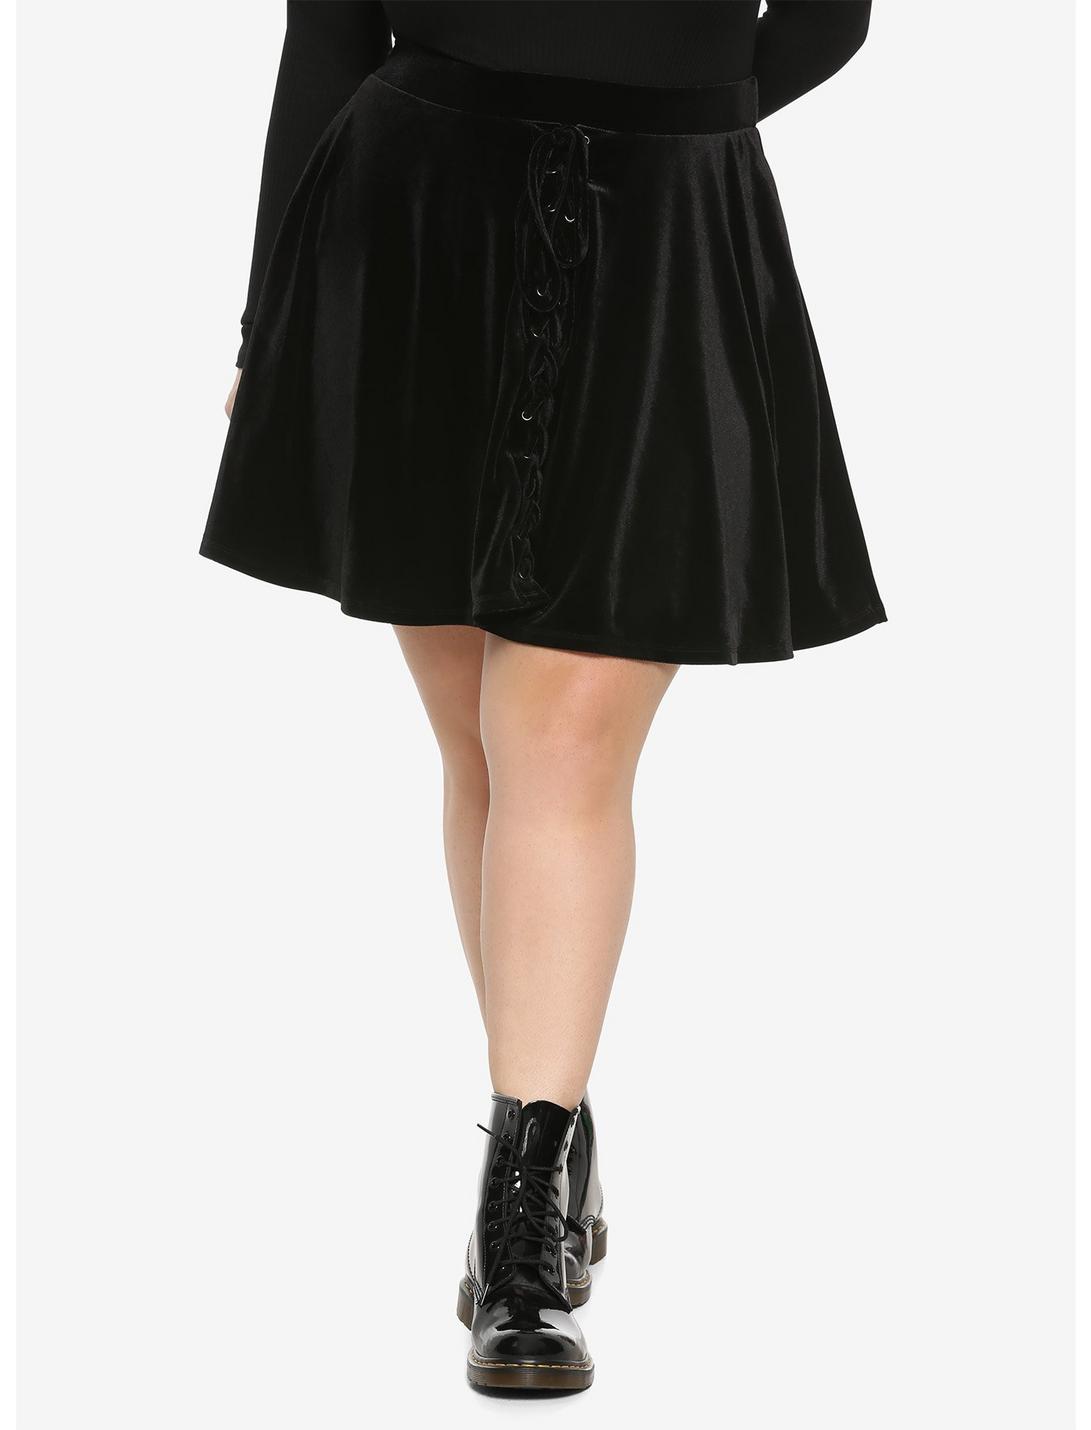 Black Velvet Lace-Up Skater Skirt Plus Size, BLACK, hi-res